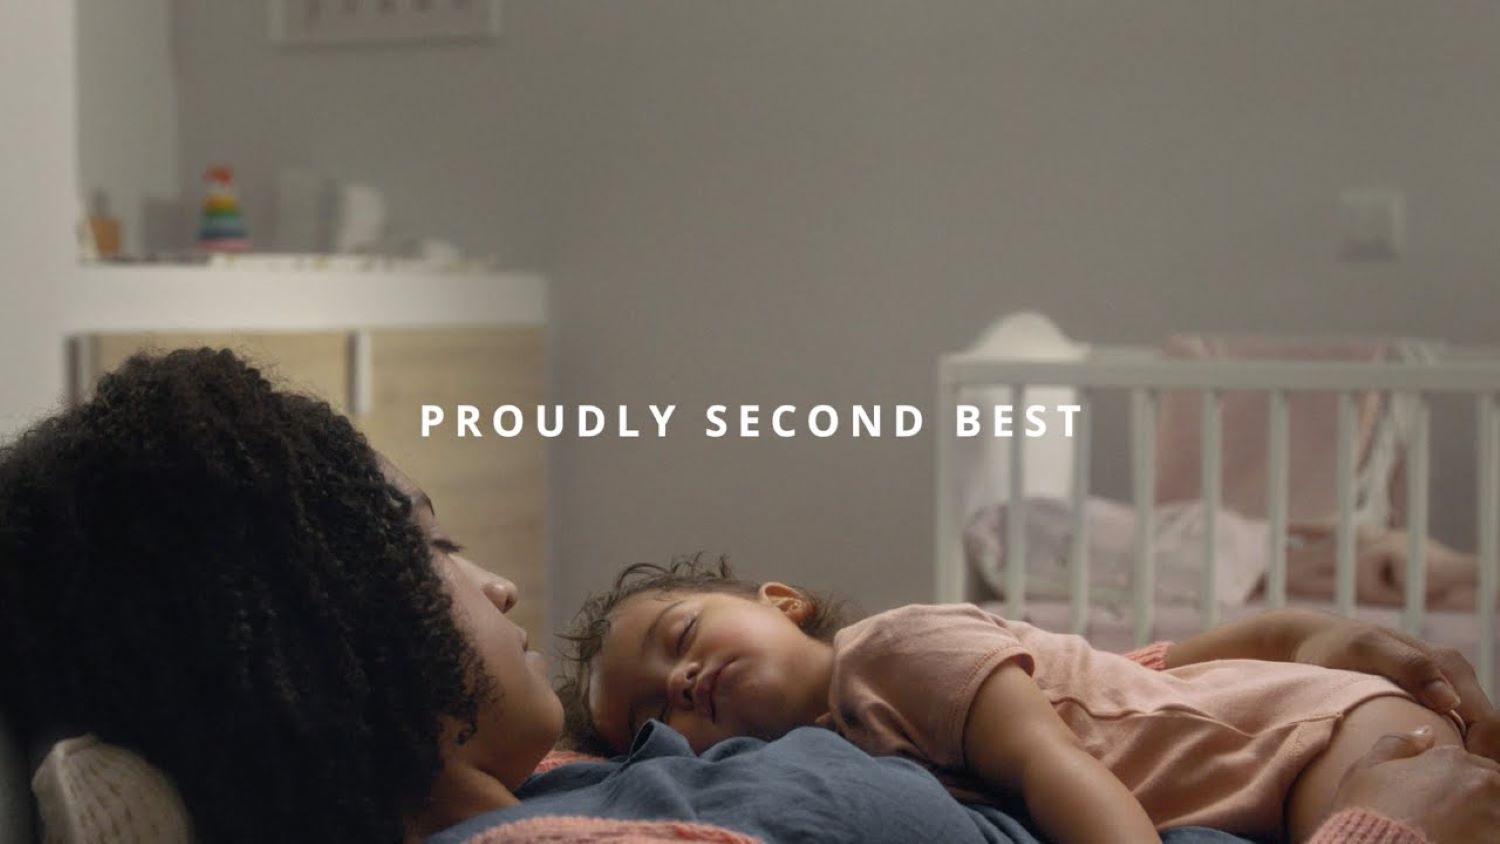 Chiến dịch Proudly Second Best - IKEA truyền tải thông điệp “Tự hào chỉ quan trọng thứ hai”, người đầu tiên chính là cha mẹ